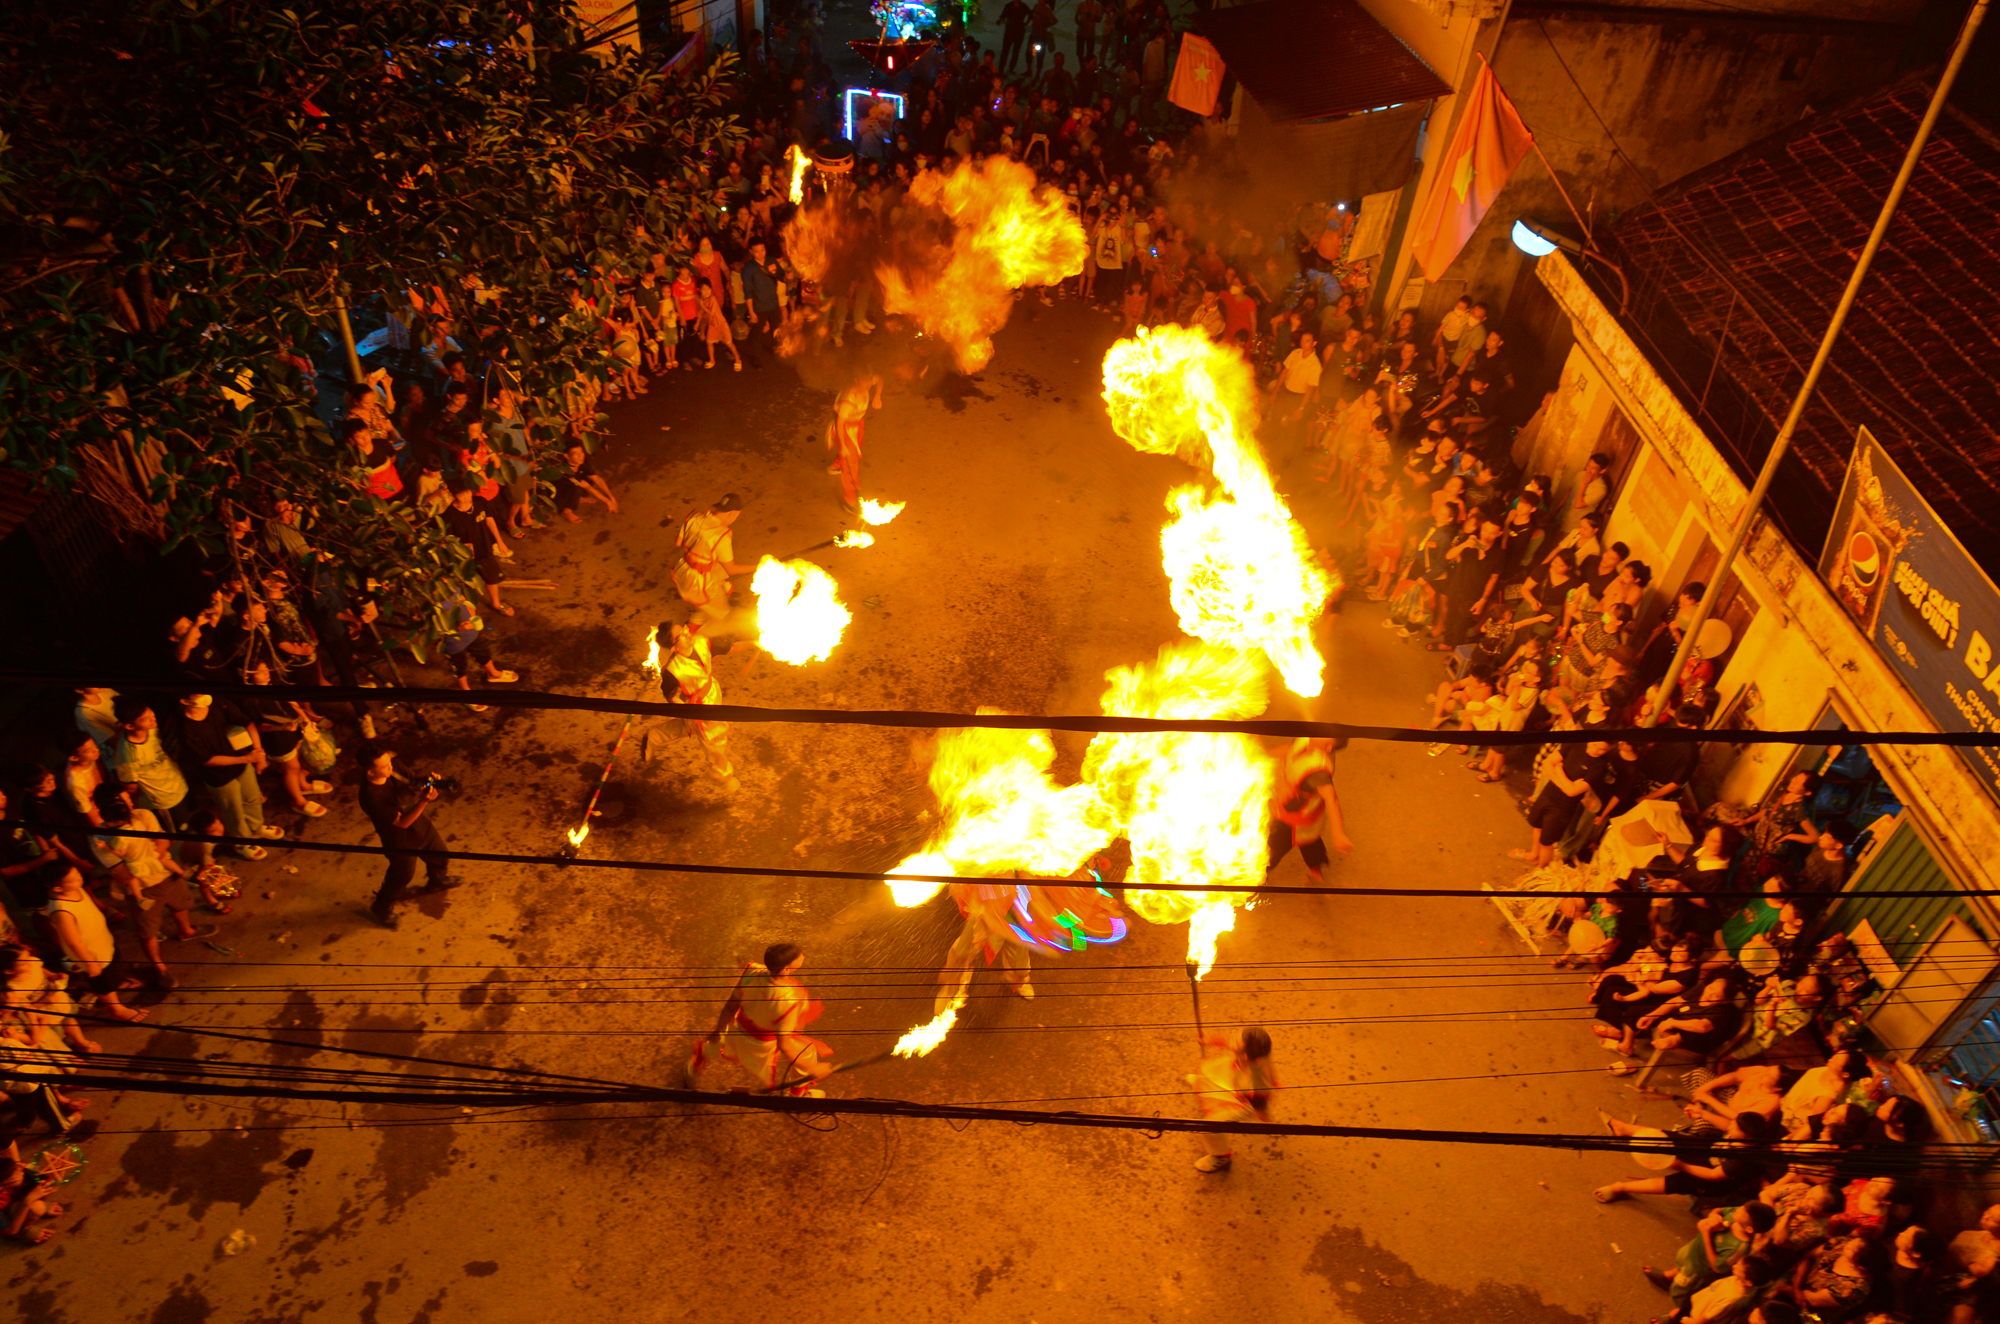 Mãn nhãn với màn múa lân, thổi lửa độc đáo đêm Trung thu tại thôn Cao Hạ, Hà Nội - Ảnh 4.